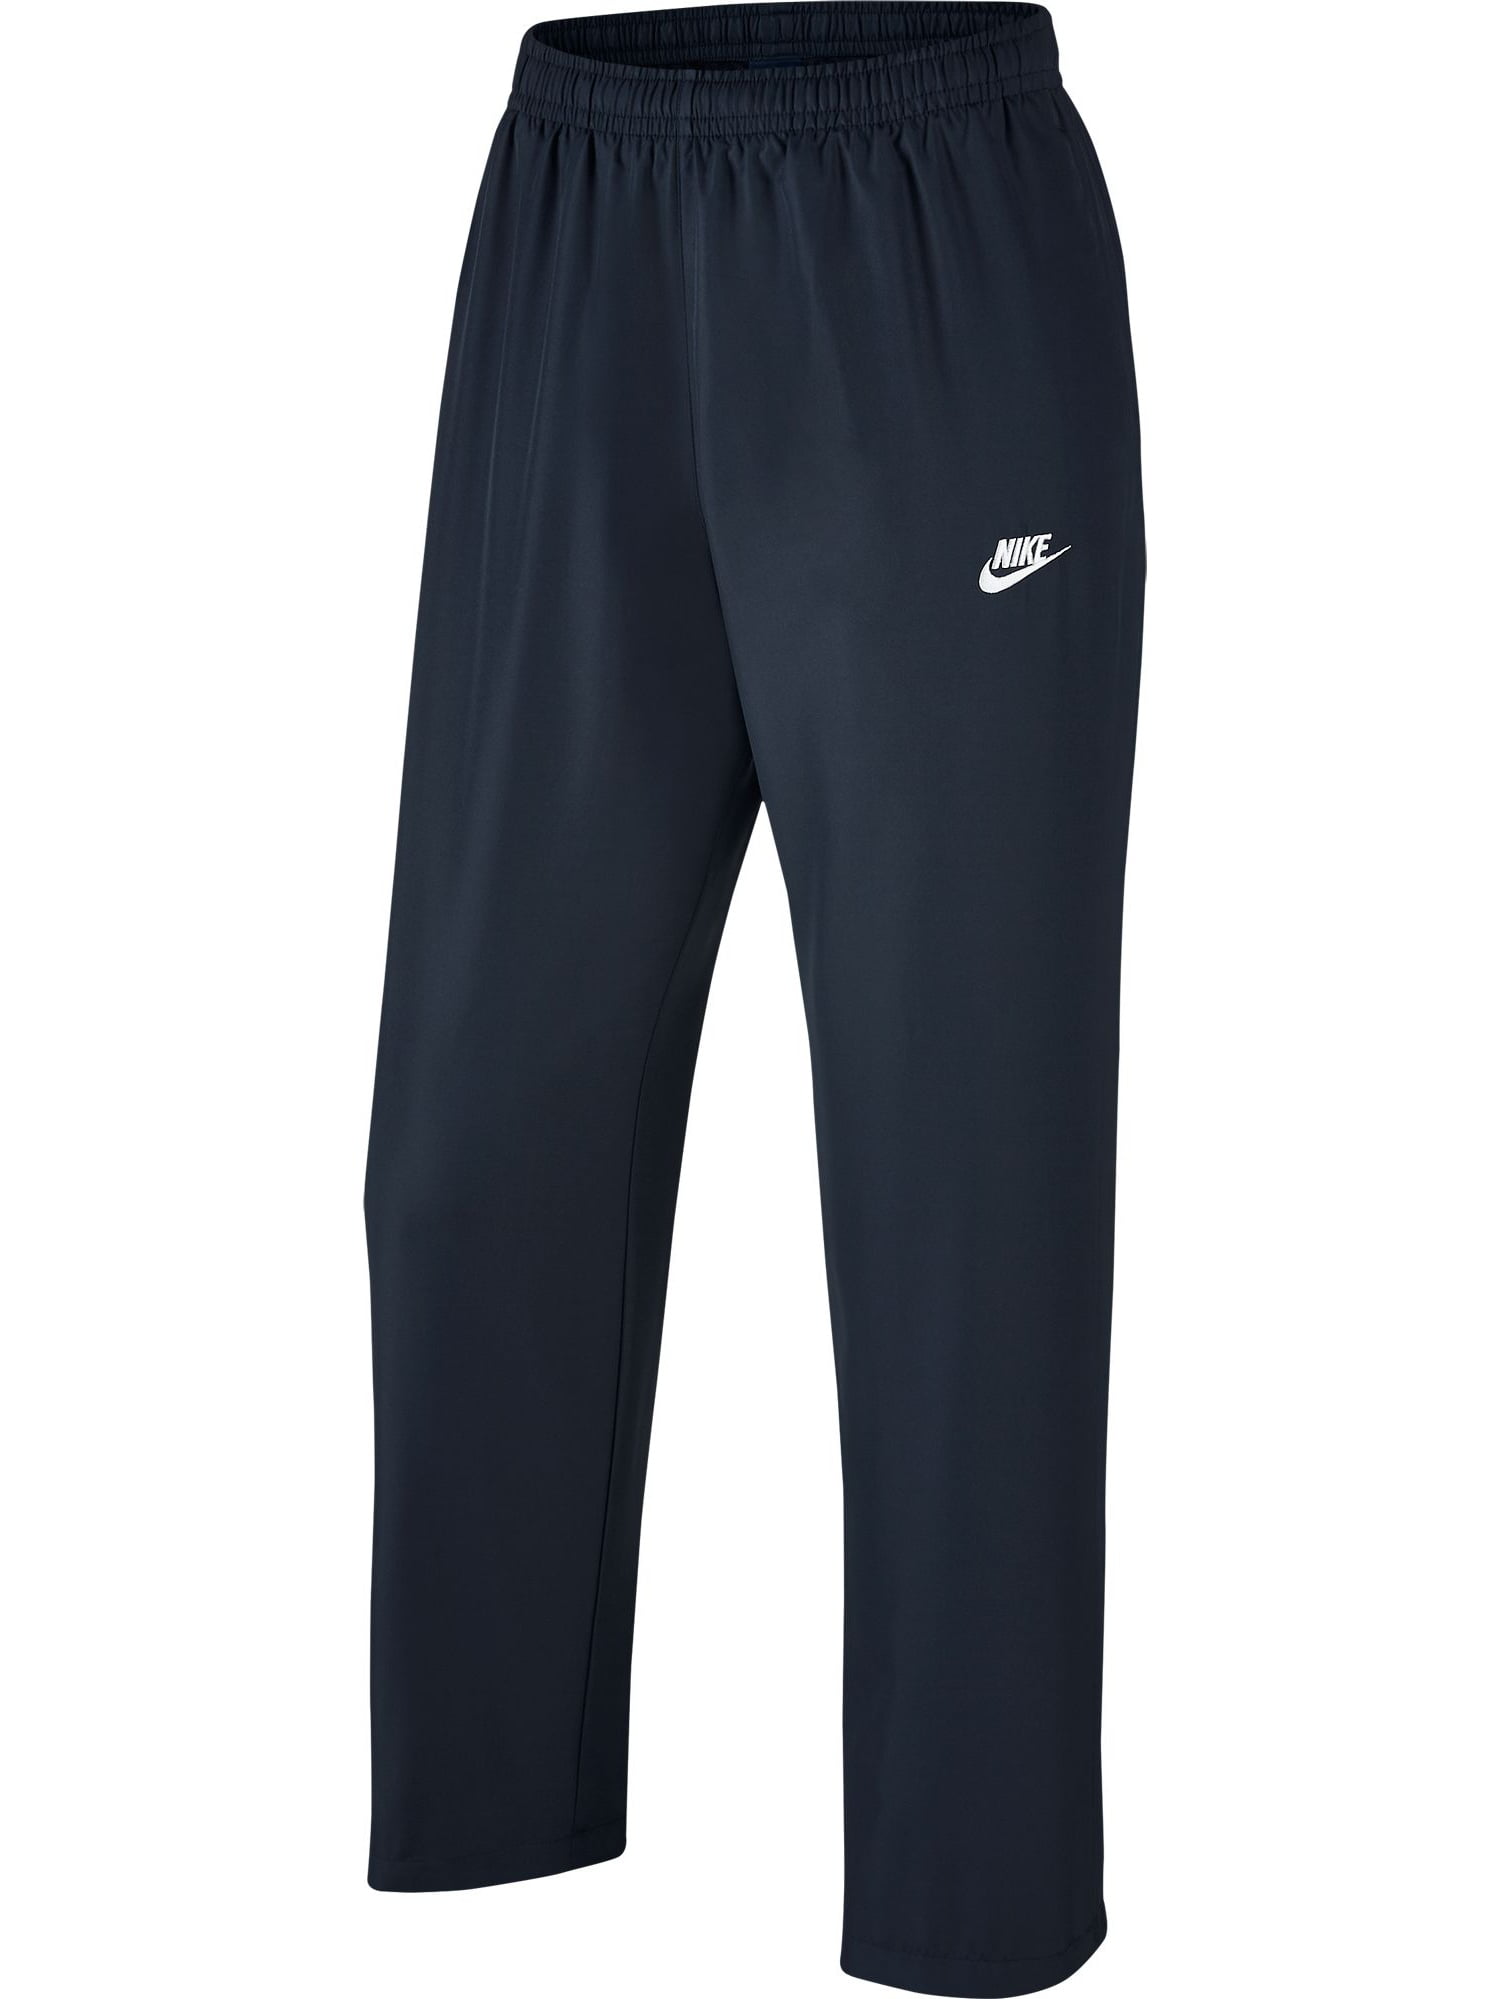 Nike NSW Opem Hem Men's Sportswear Casual Athletic Pants Dark Obsidian ...